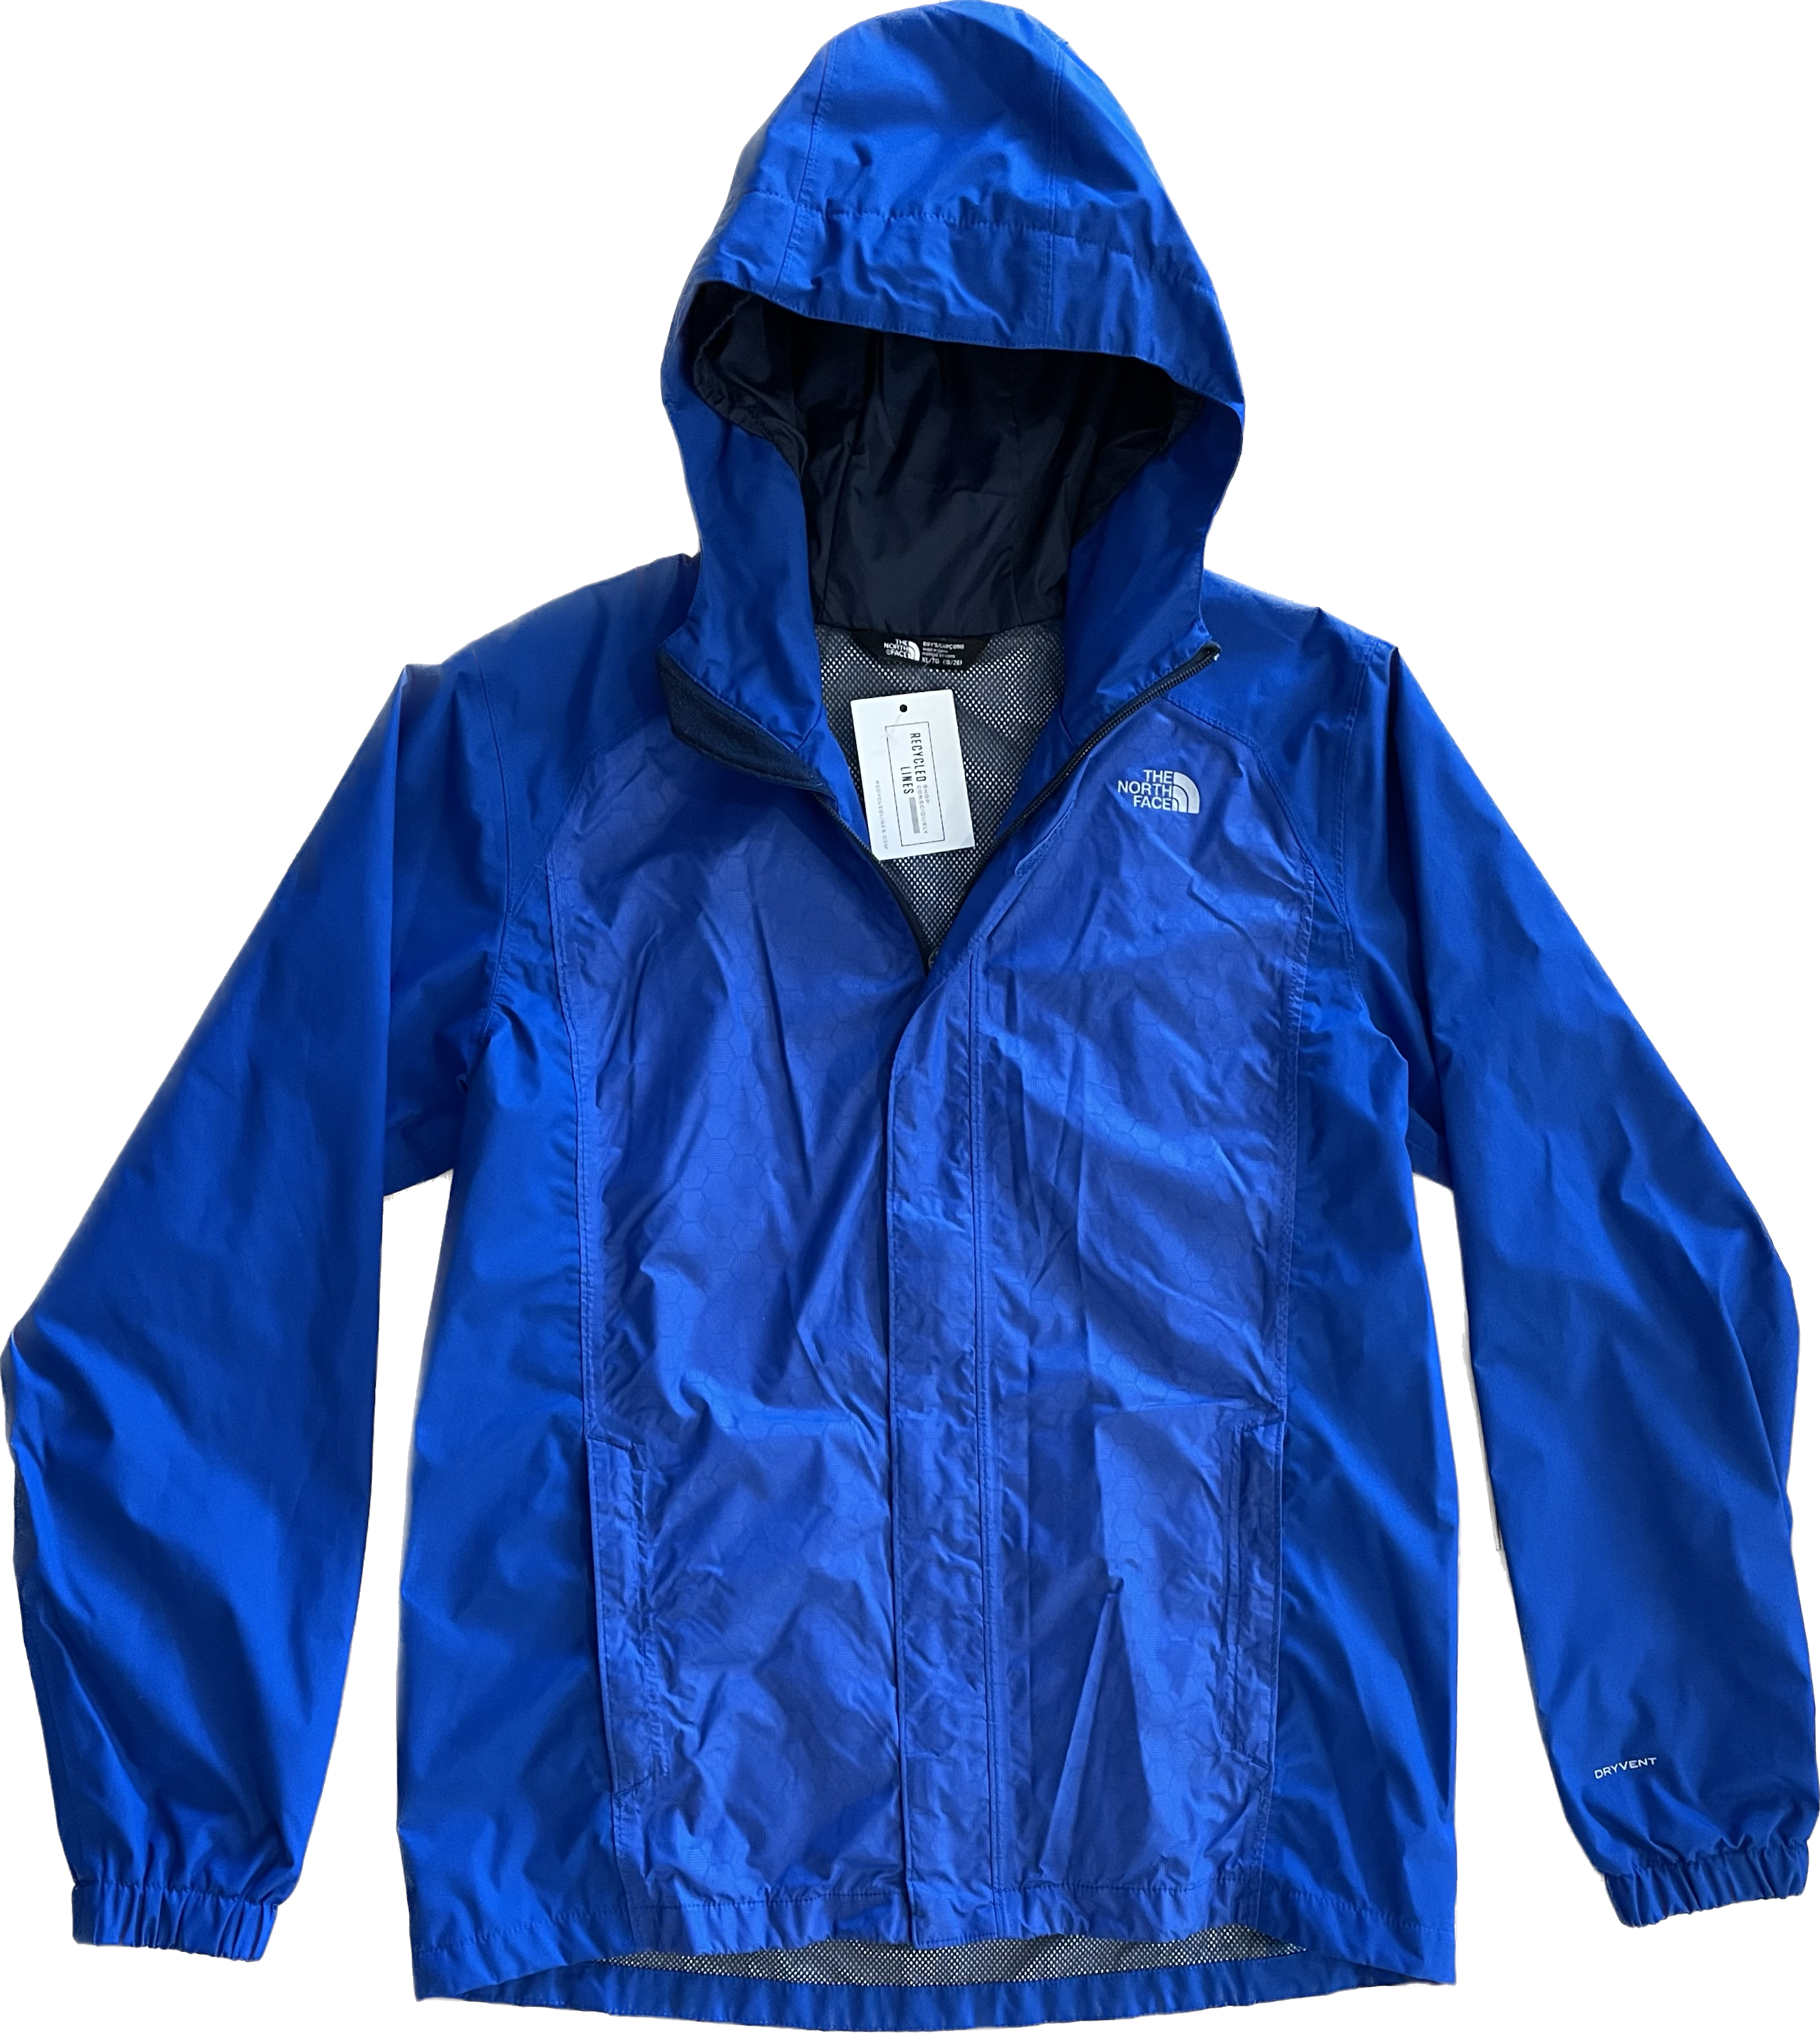 North Face Rain Jacket, Blue Boys Size XL